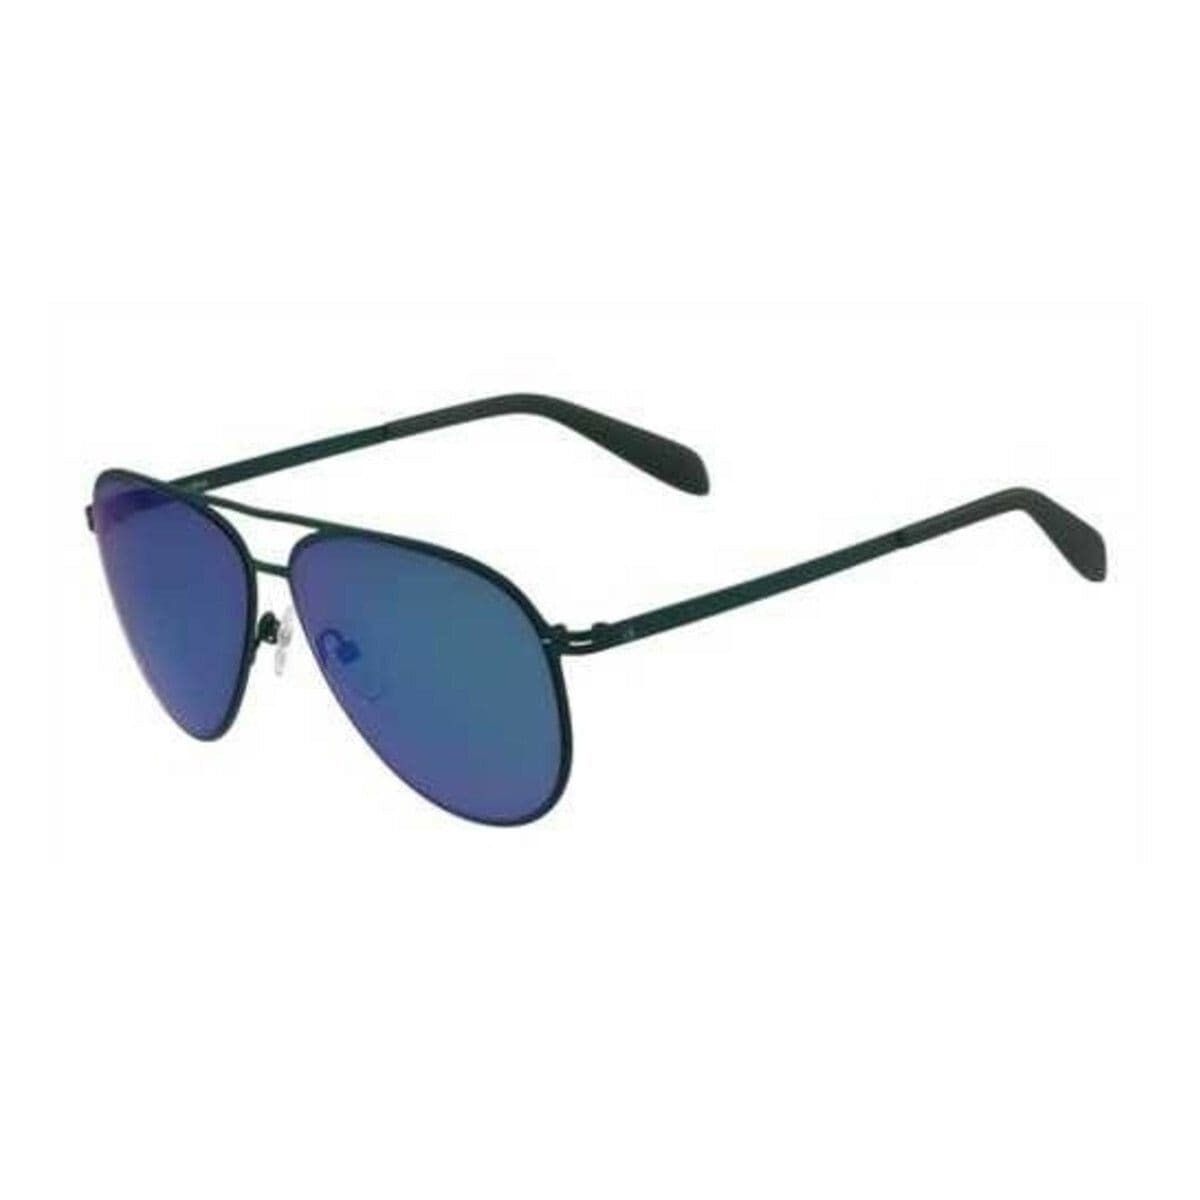 Calvin Klein CK2138S-317 Dark Green Aviator Sunglasses Frames with Blue Lenses 750779092491